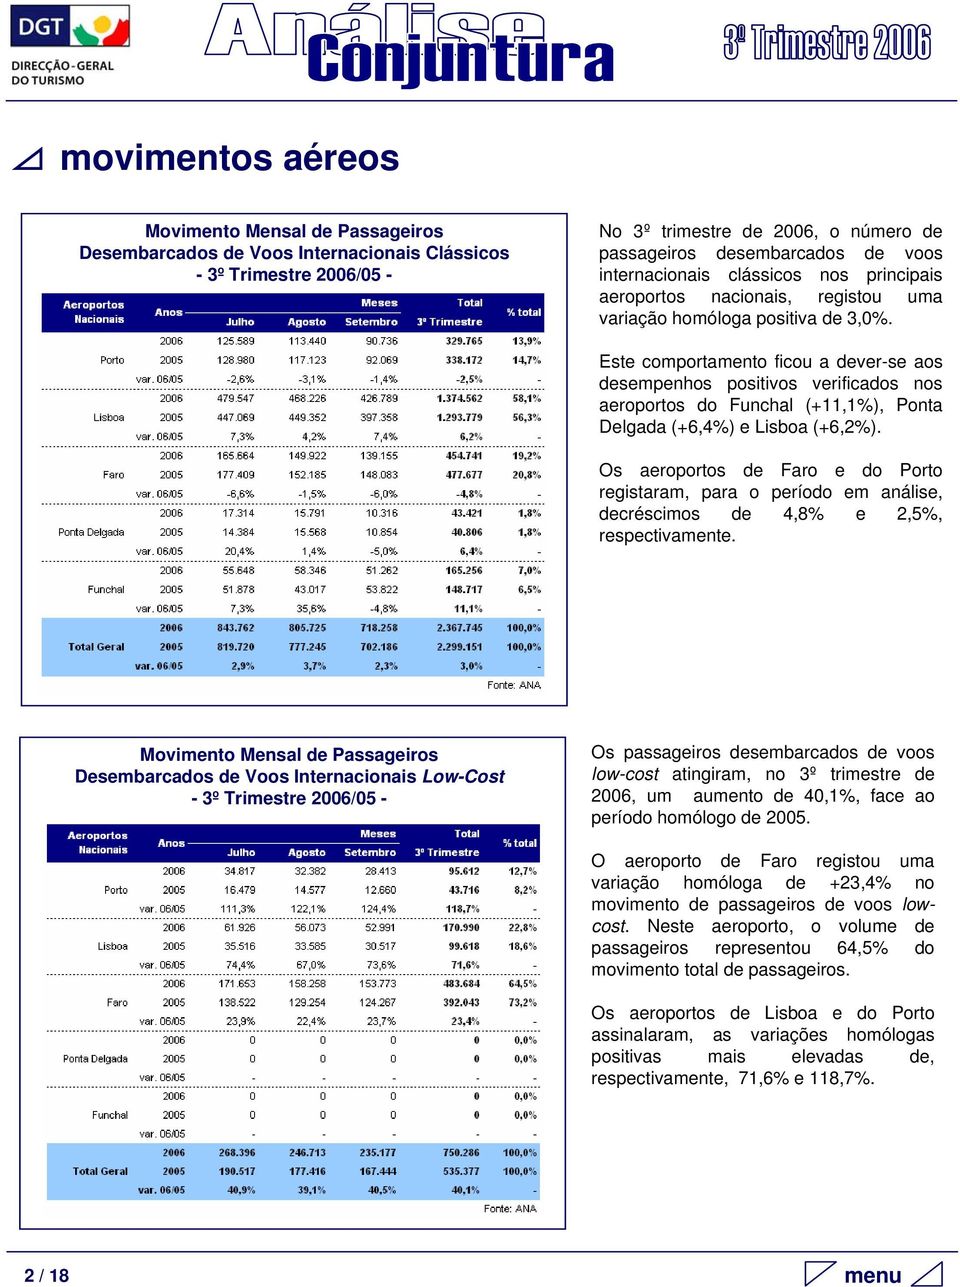 Este comportamento ficou a dever-se aos desempenhos positivos verificados nos aeroportos do Funchal (+11,1%), Ponta Delgada (+6,4%) e Lisboa (+6,2%).